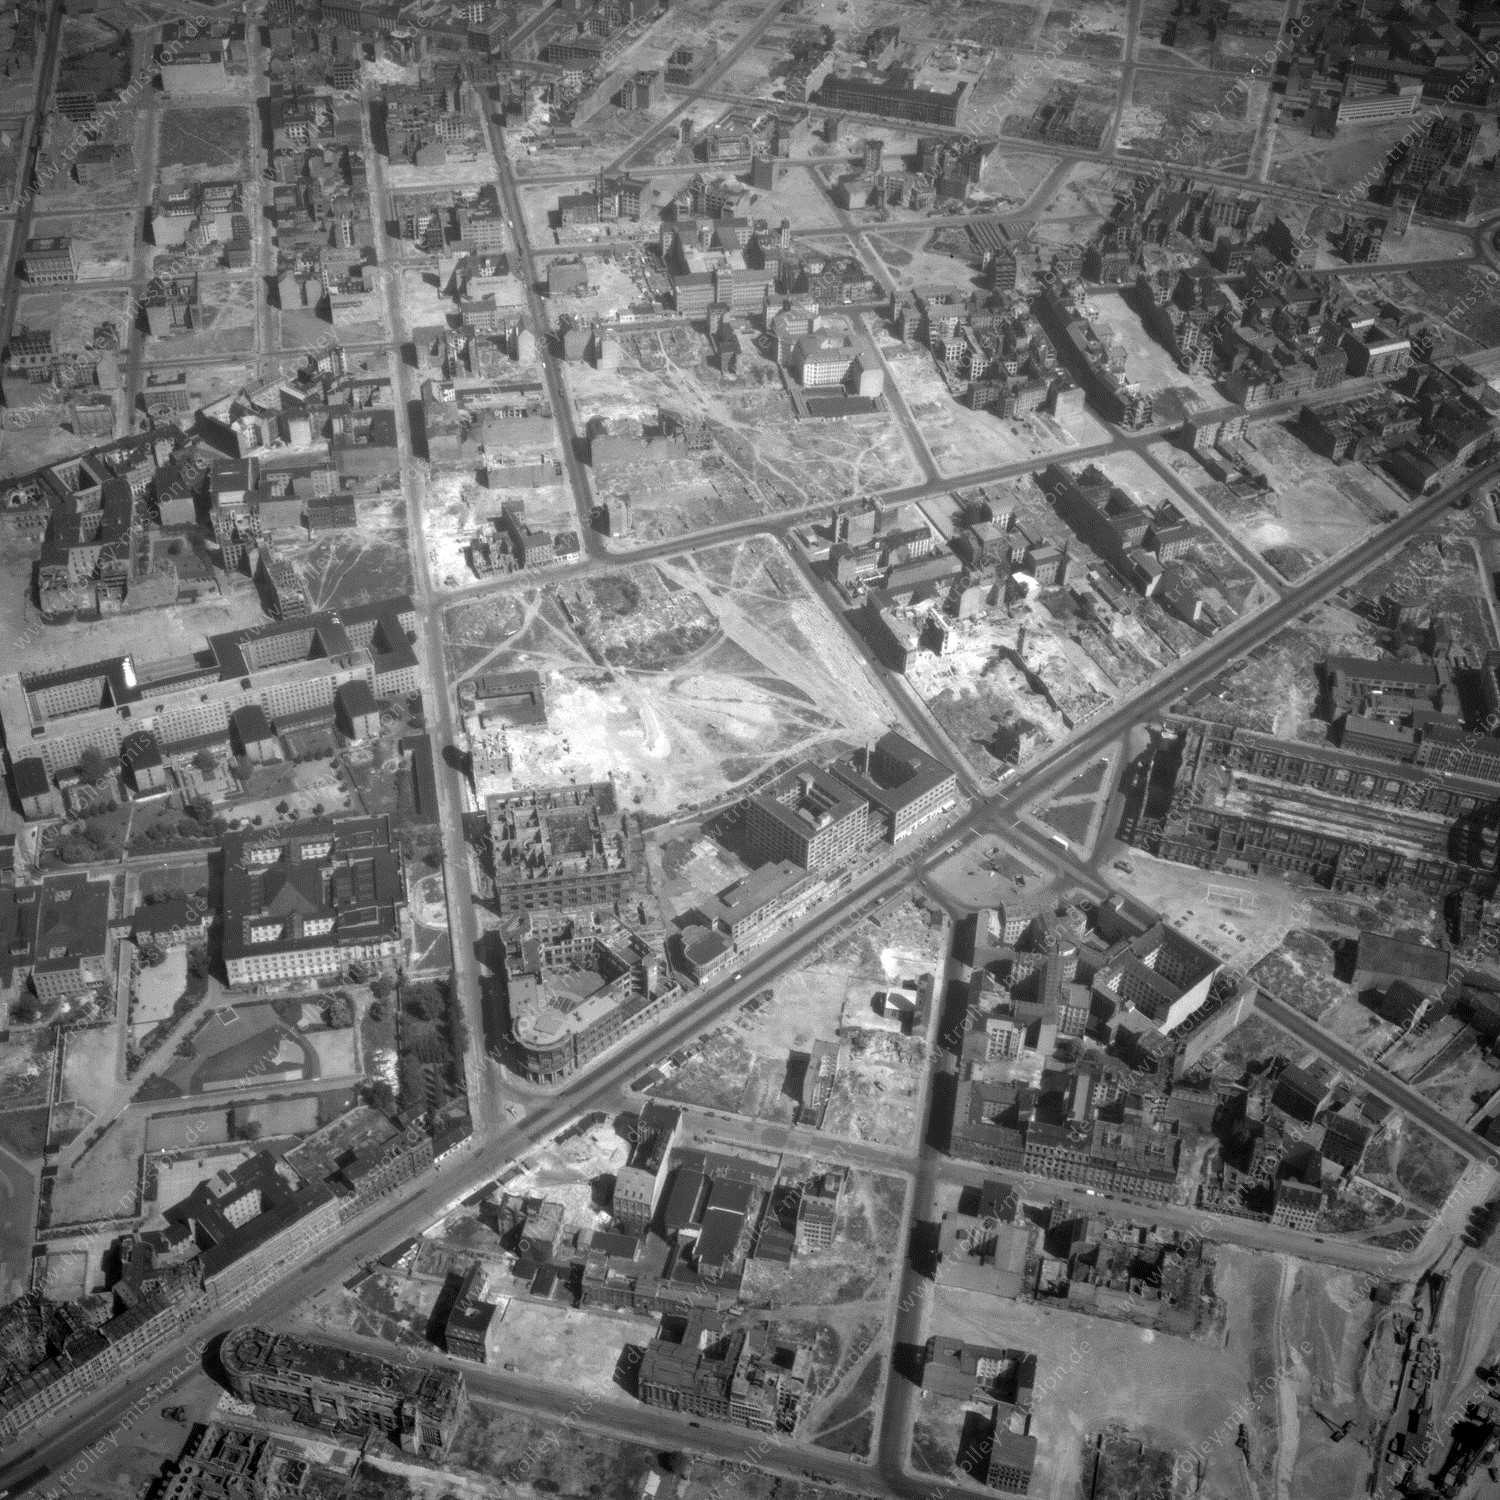 Alte Fotos und Luftbilder von Berlin - Luftbildaufnahme Nr. 09 - Historische Luftaufnahmen von West-Berlin aus dem Jahr 1954 - Flugstrecke India